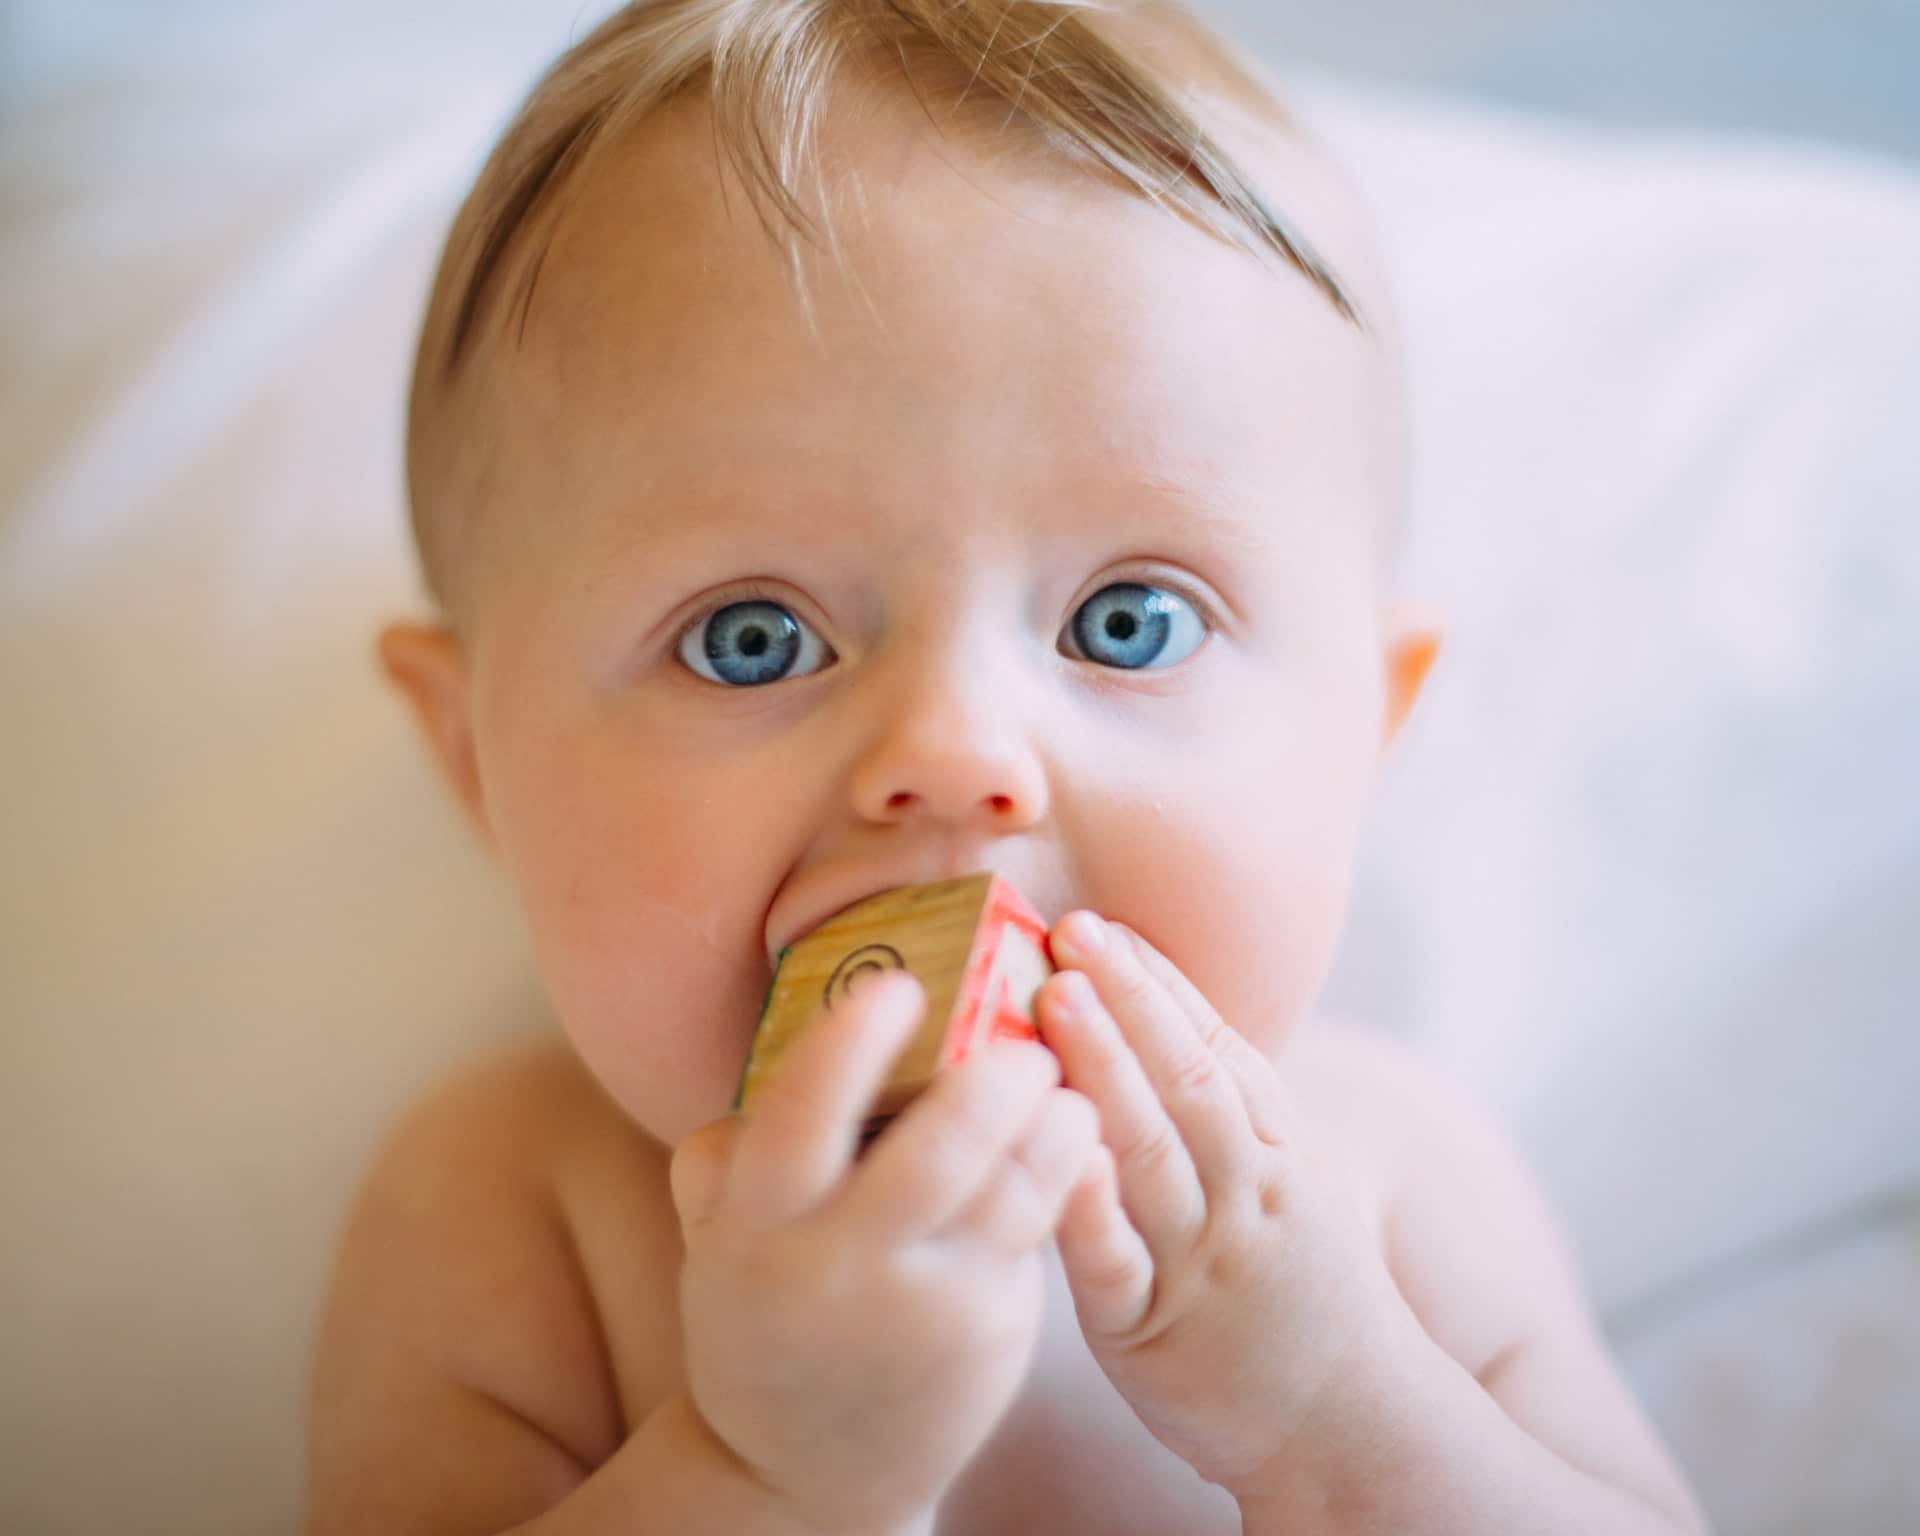 Comment arrêter l'allaitement d'un bébé de 18 mois ?